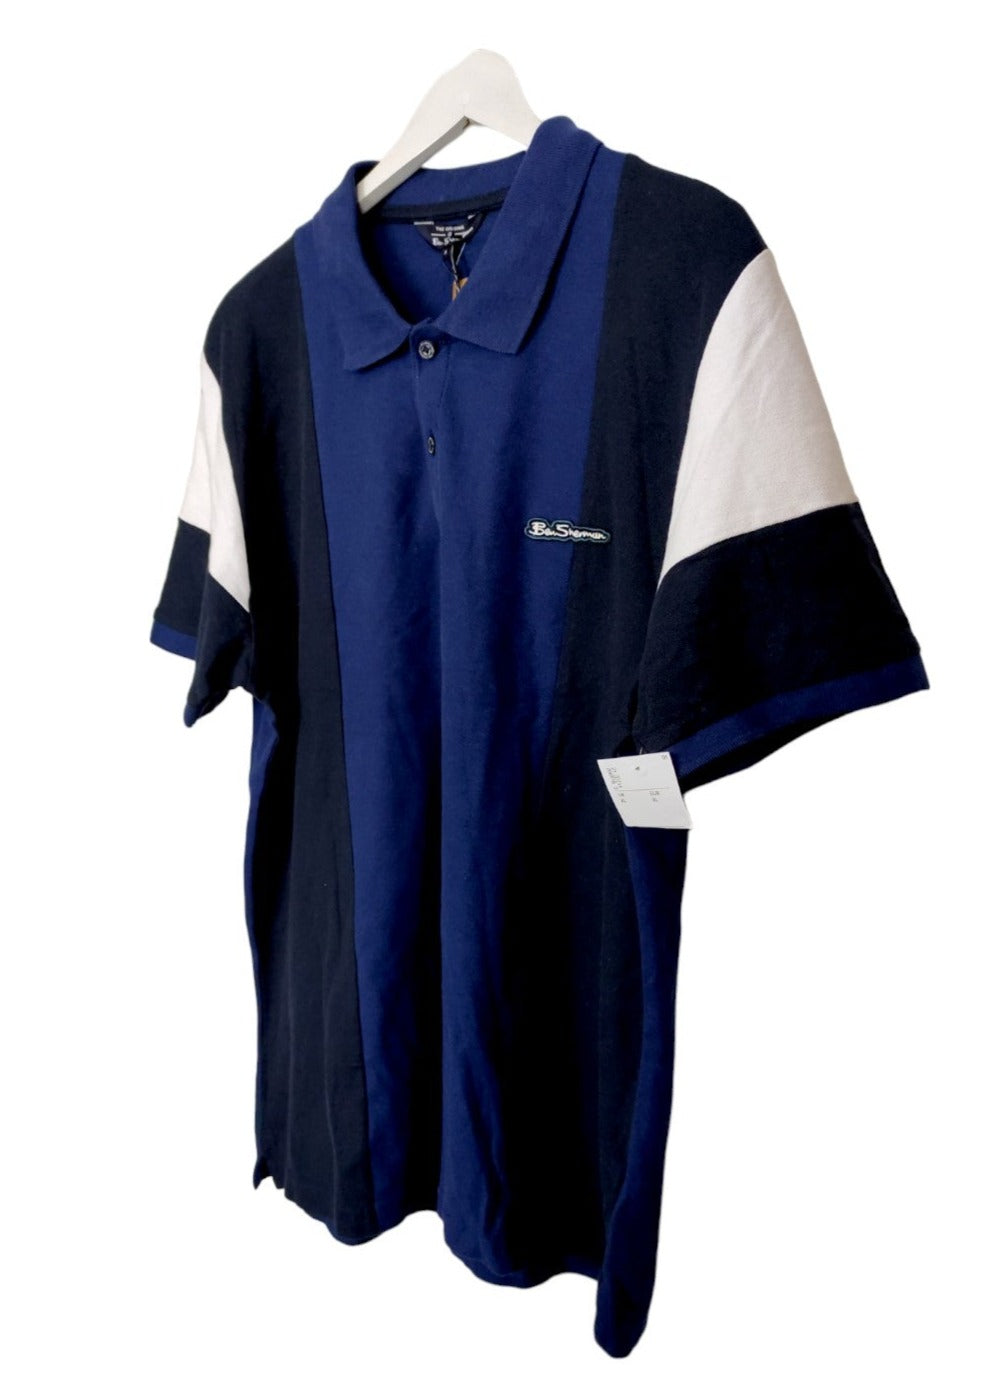 Stock, Ανδρική Μπλούζα - T-Shirt BEN SHERMAN σε Μπλε χρώματα (Large)